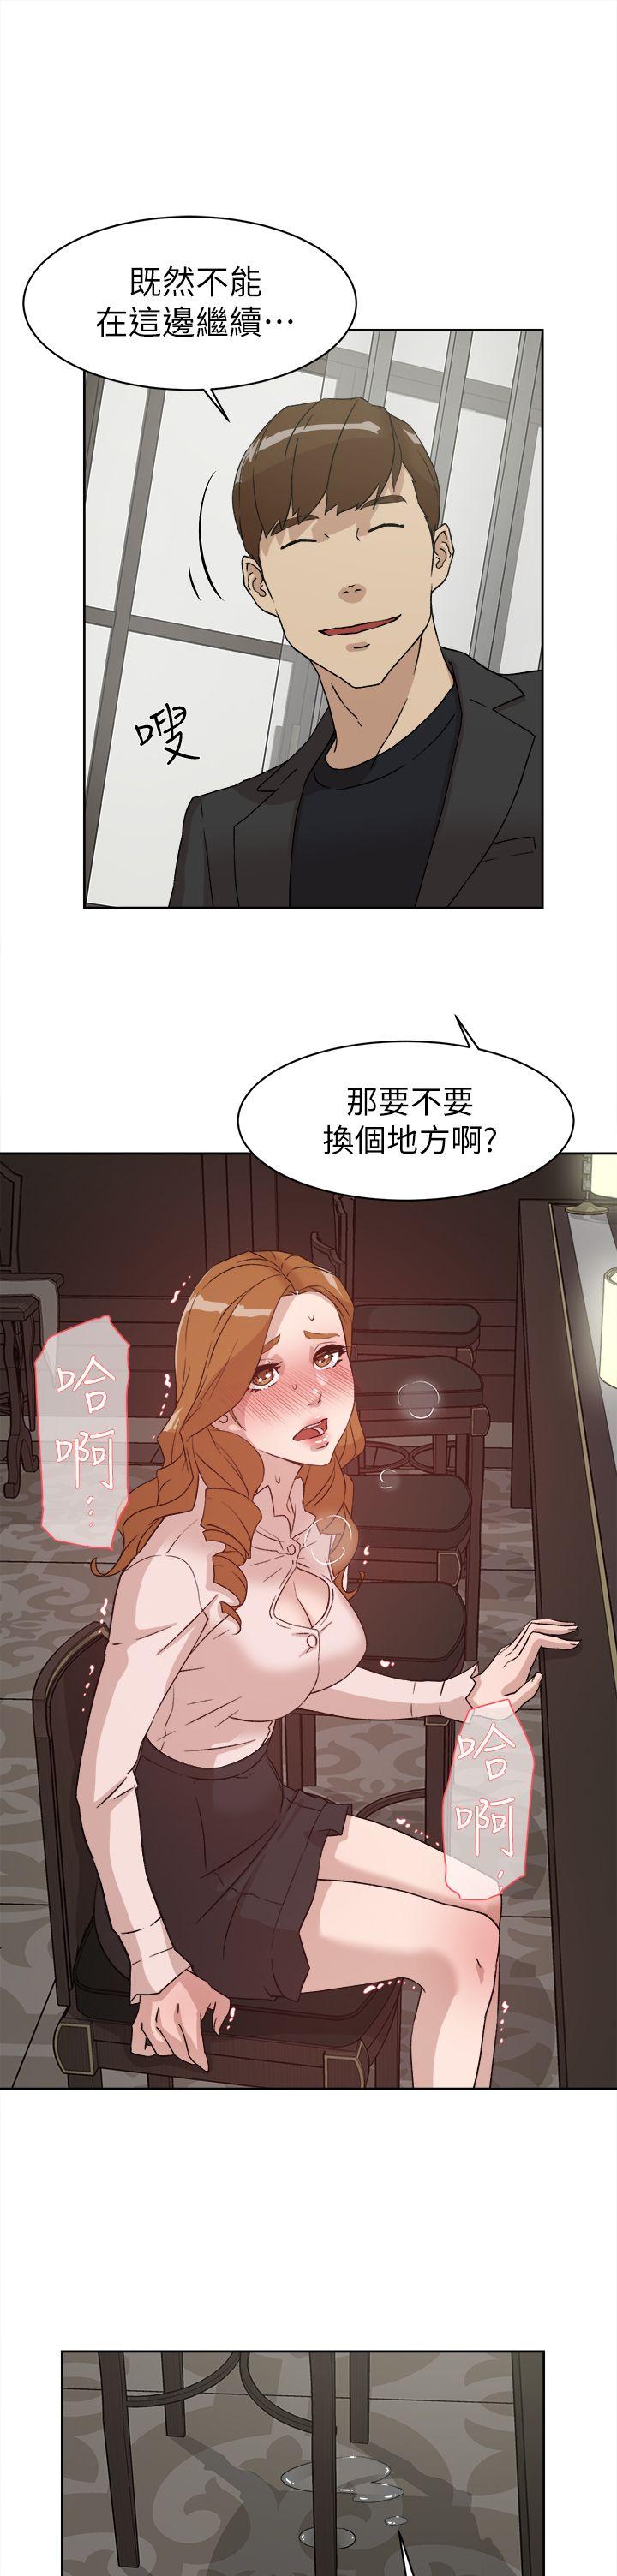 韩国污漫画 她的高跟鞋(無刪減) 第51话 19